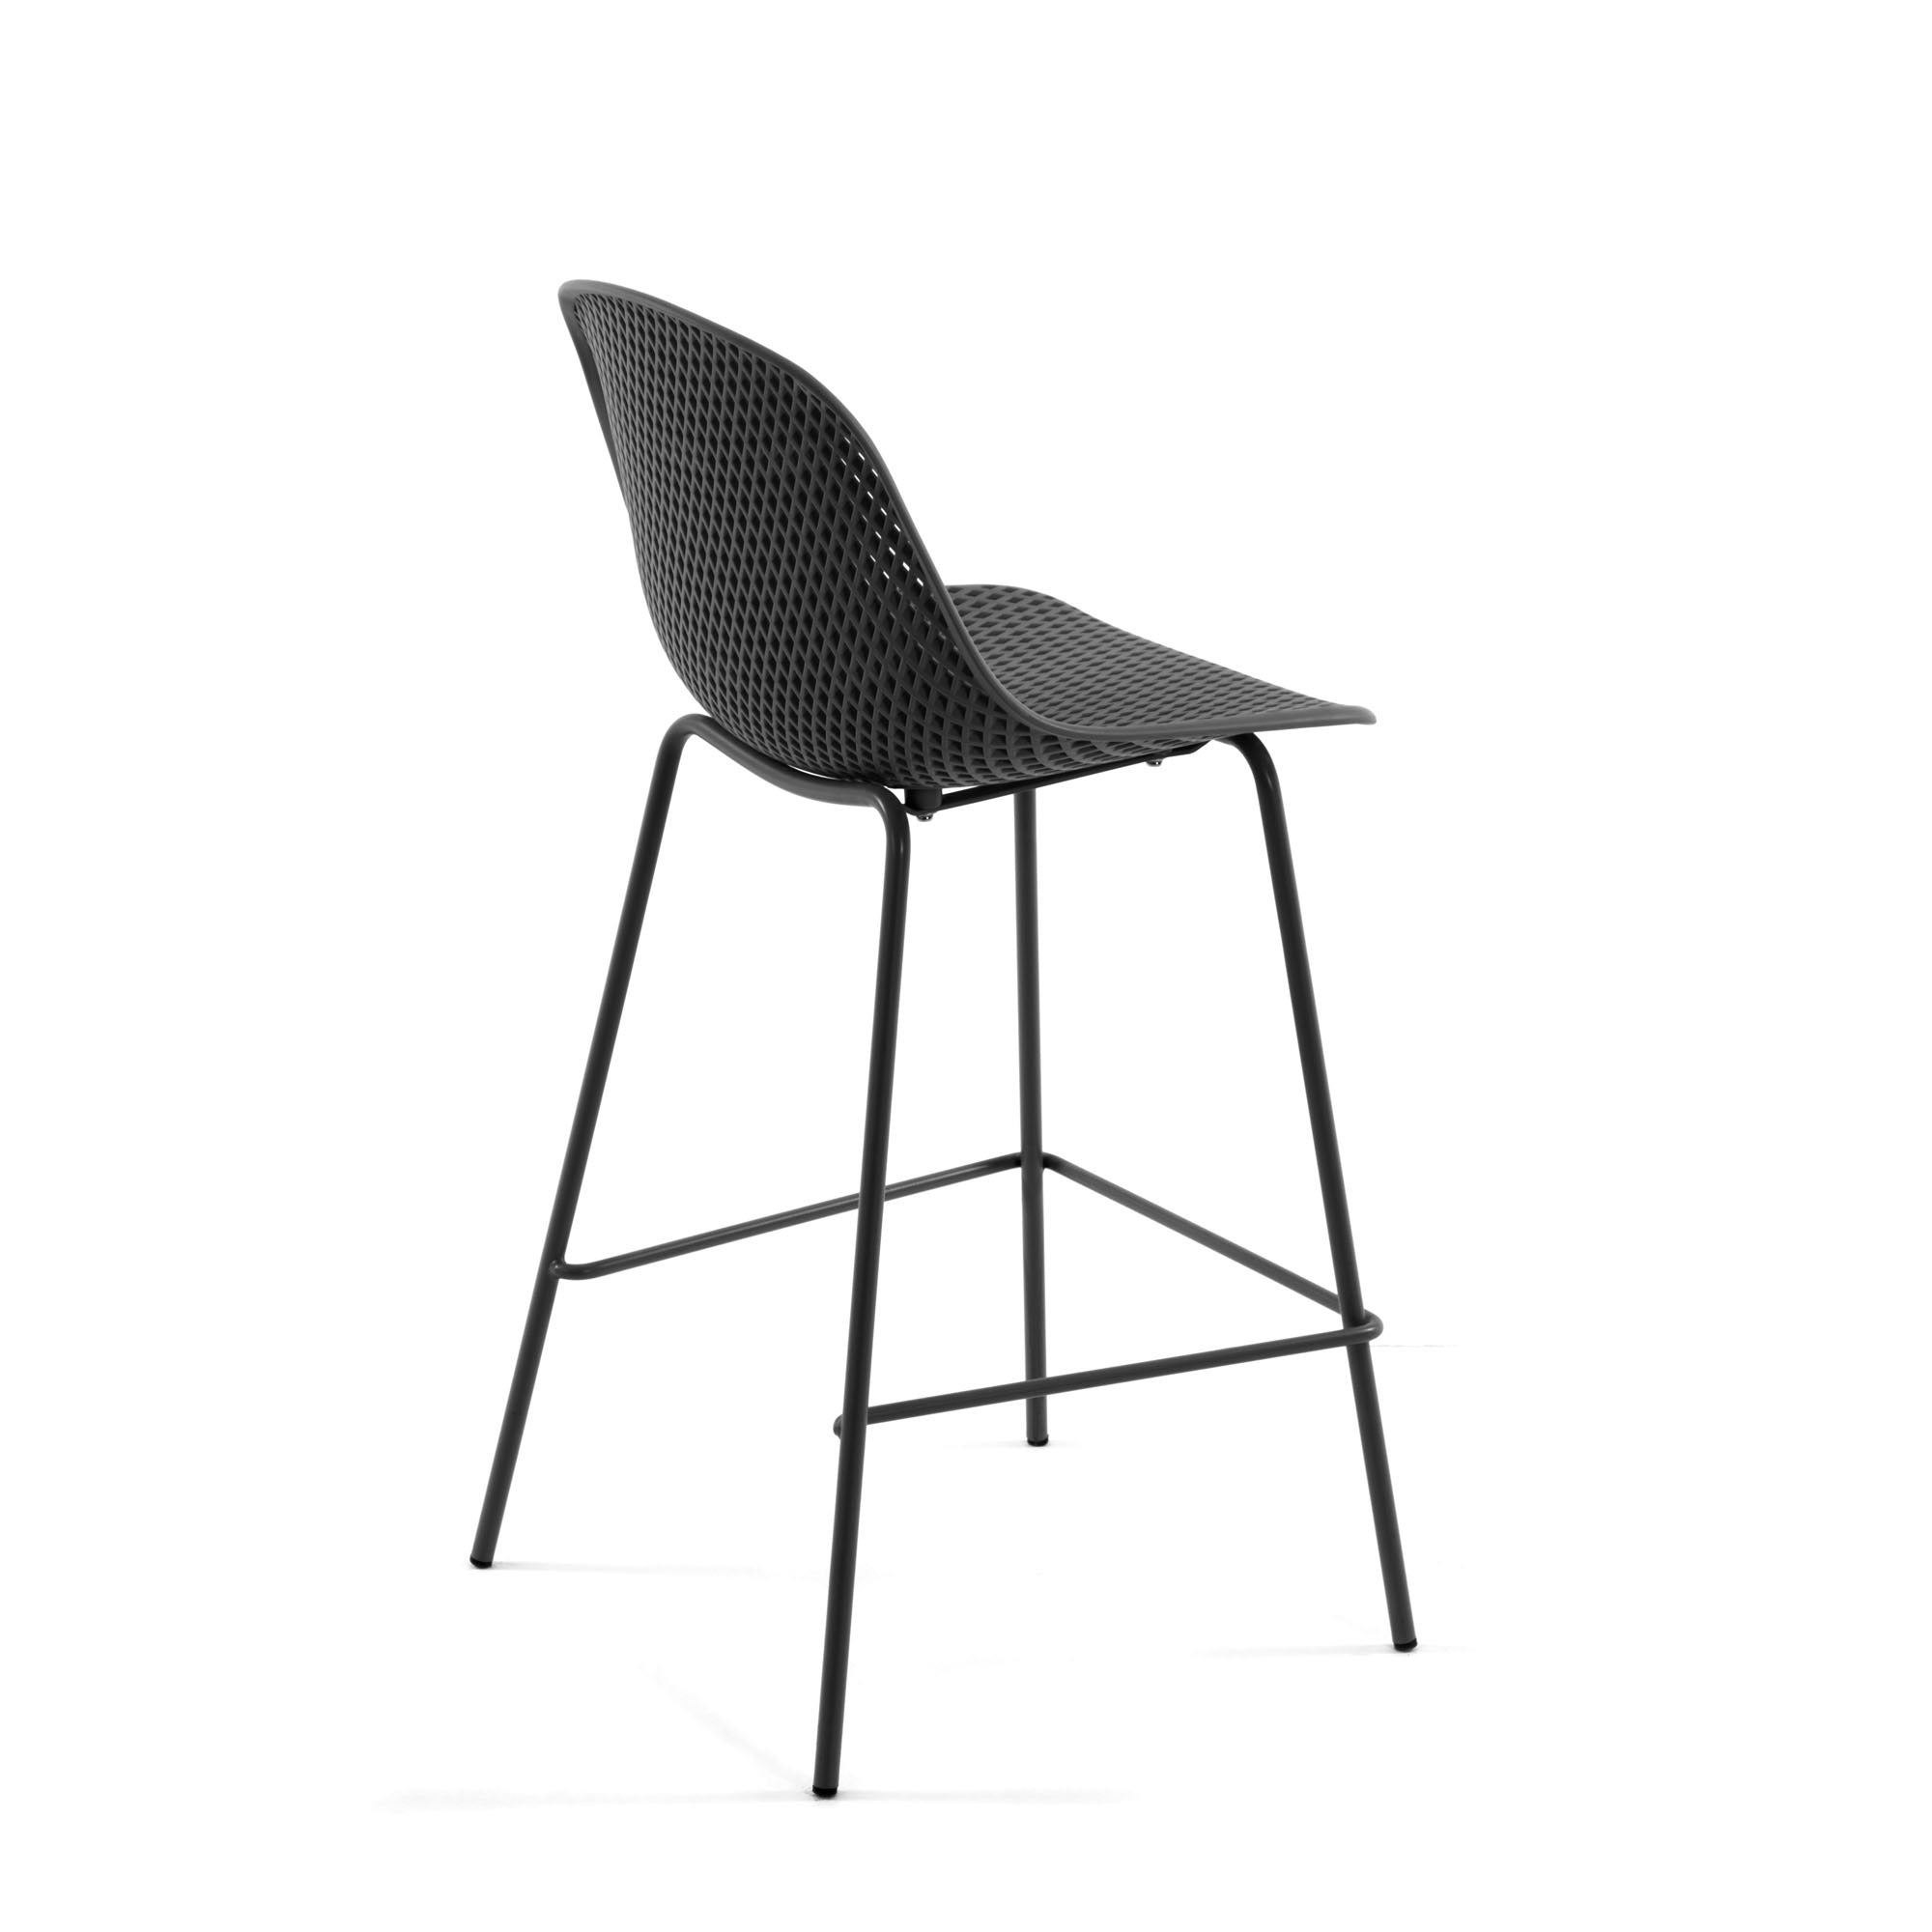 Quinby kültéri szék szürke színben, magasság 75 cm